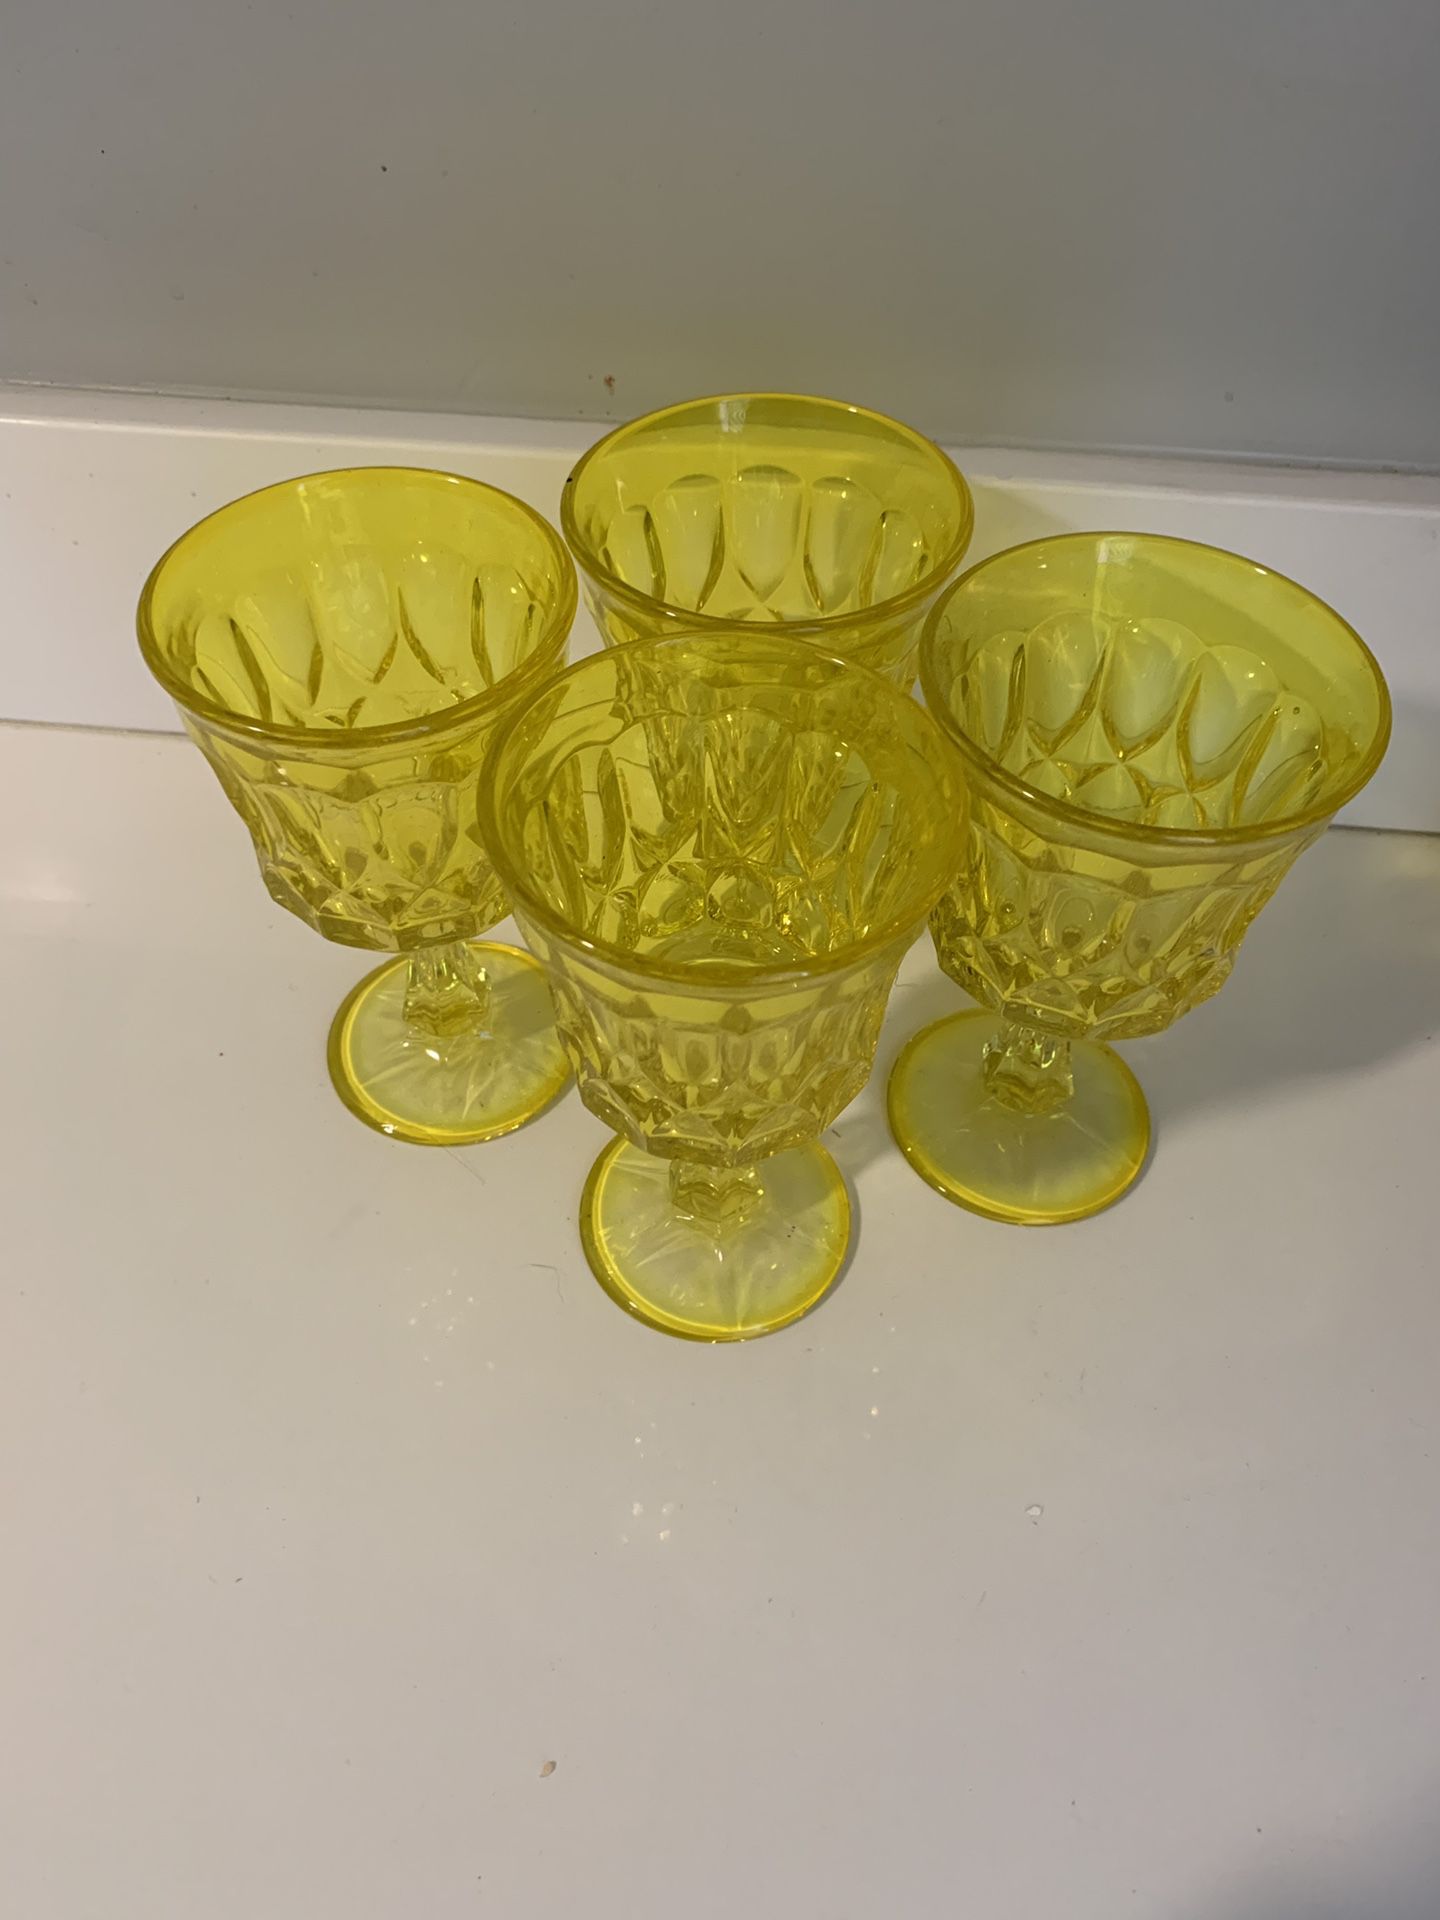 Uranium yellow glass.